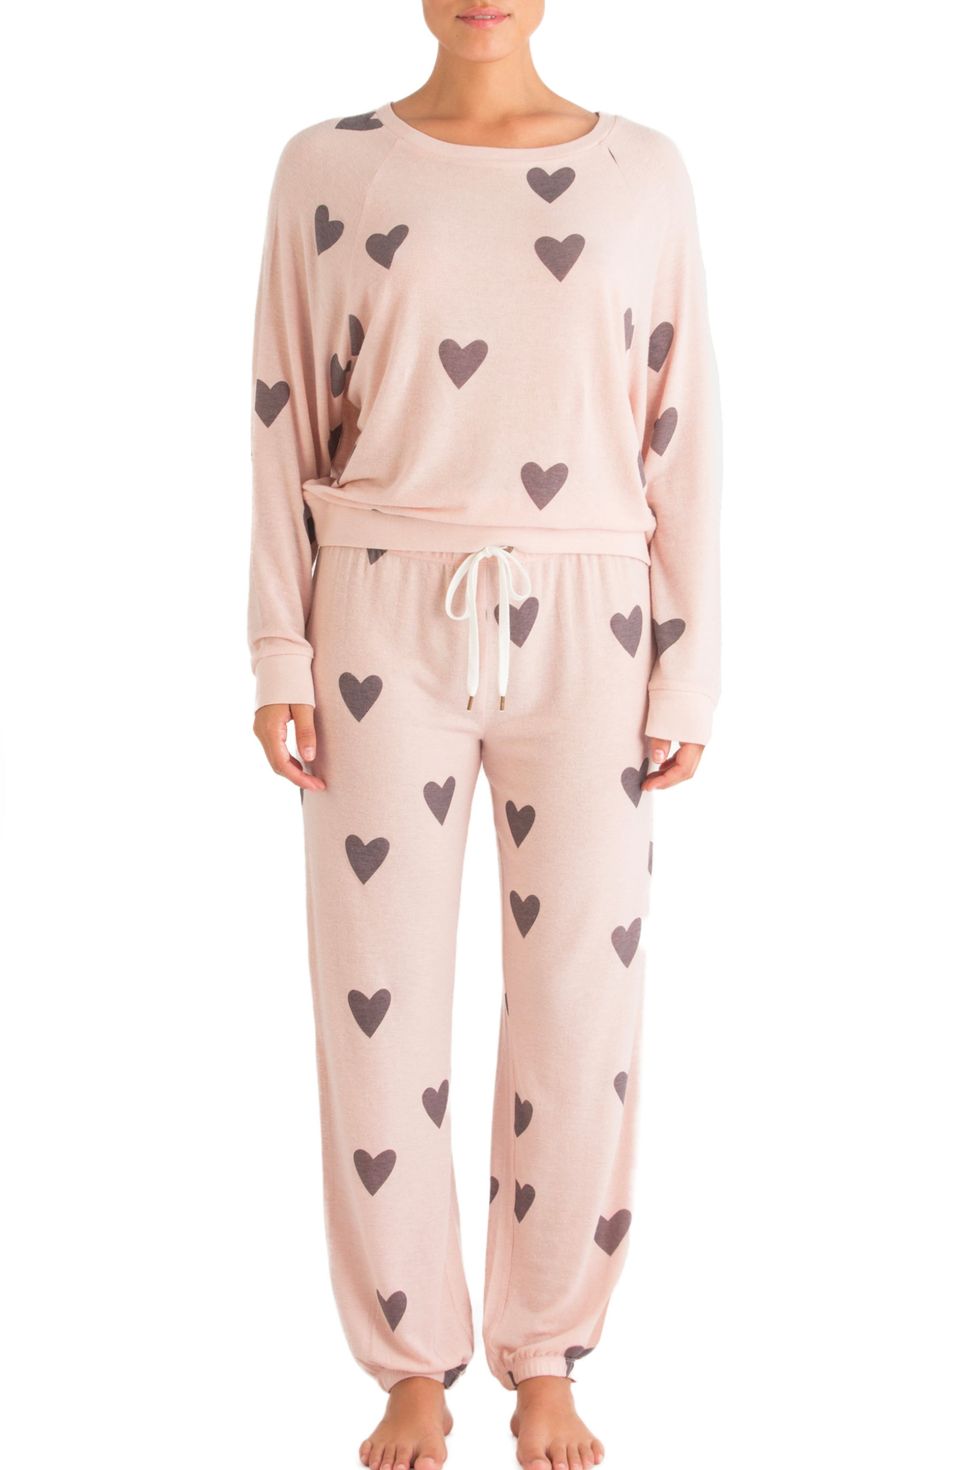 Star Seeker Brushed Jersey Pajamas